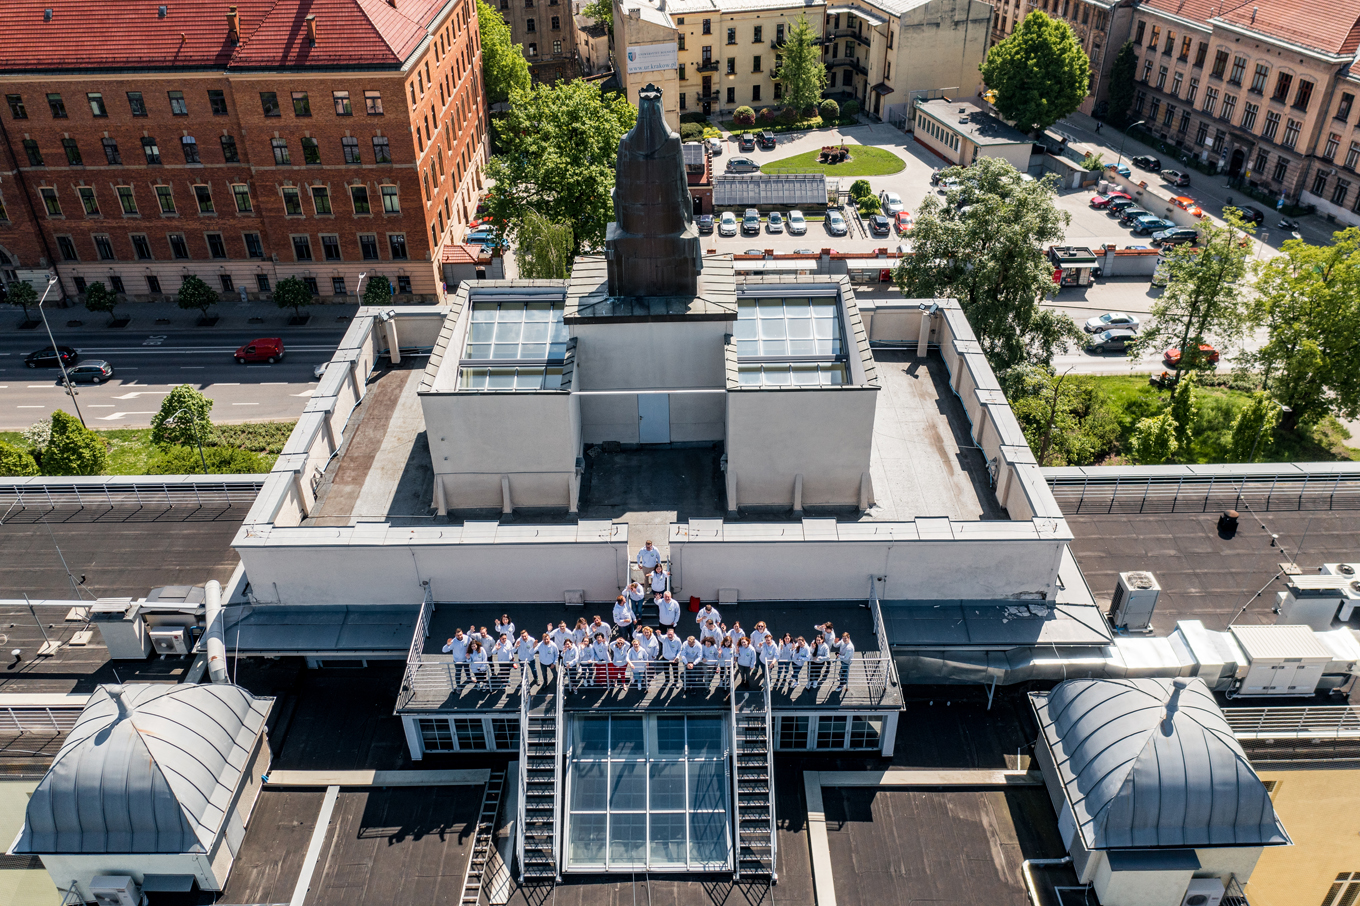 Pracownicy WILiGZ stoją na dachu budynku ubrani w jednolite szare bluzy wydziałowe i machają ręką na powitanie. W tle widać niebo oraz panorame Krakowa.